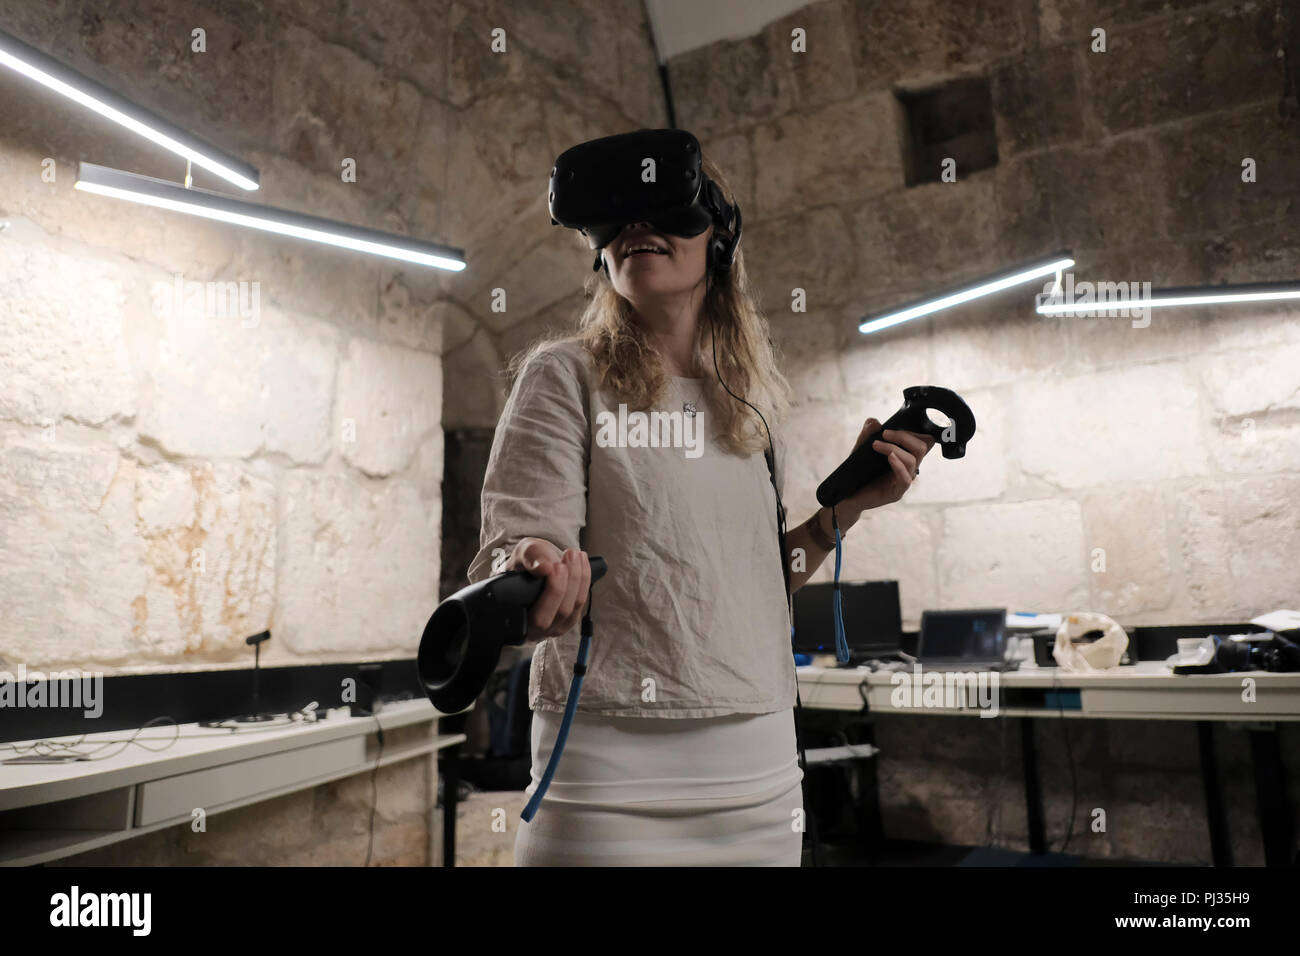 Ein Besucher genießt eine 3D-Rundgang von Inhalten, die über virtuelle  Realität VR-Brille am Tod Innovation Lab in der Turm Davids Museum, das als  Jerusalem Zitadelle in Israel bekannt ist. TOD ist eine